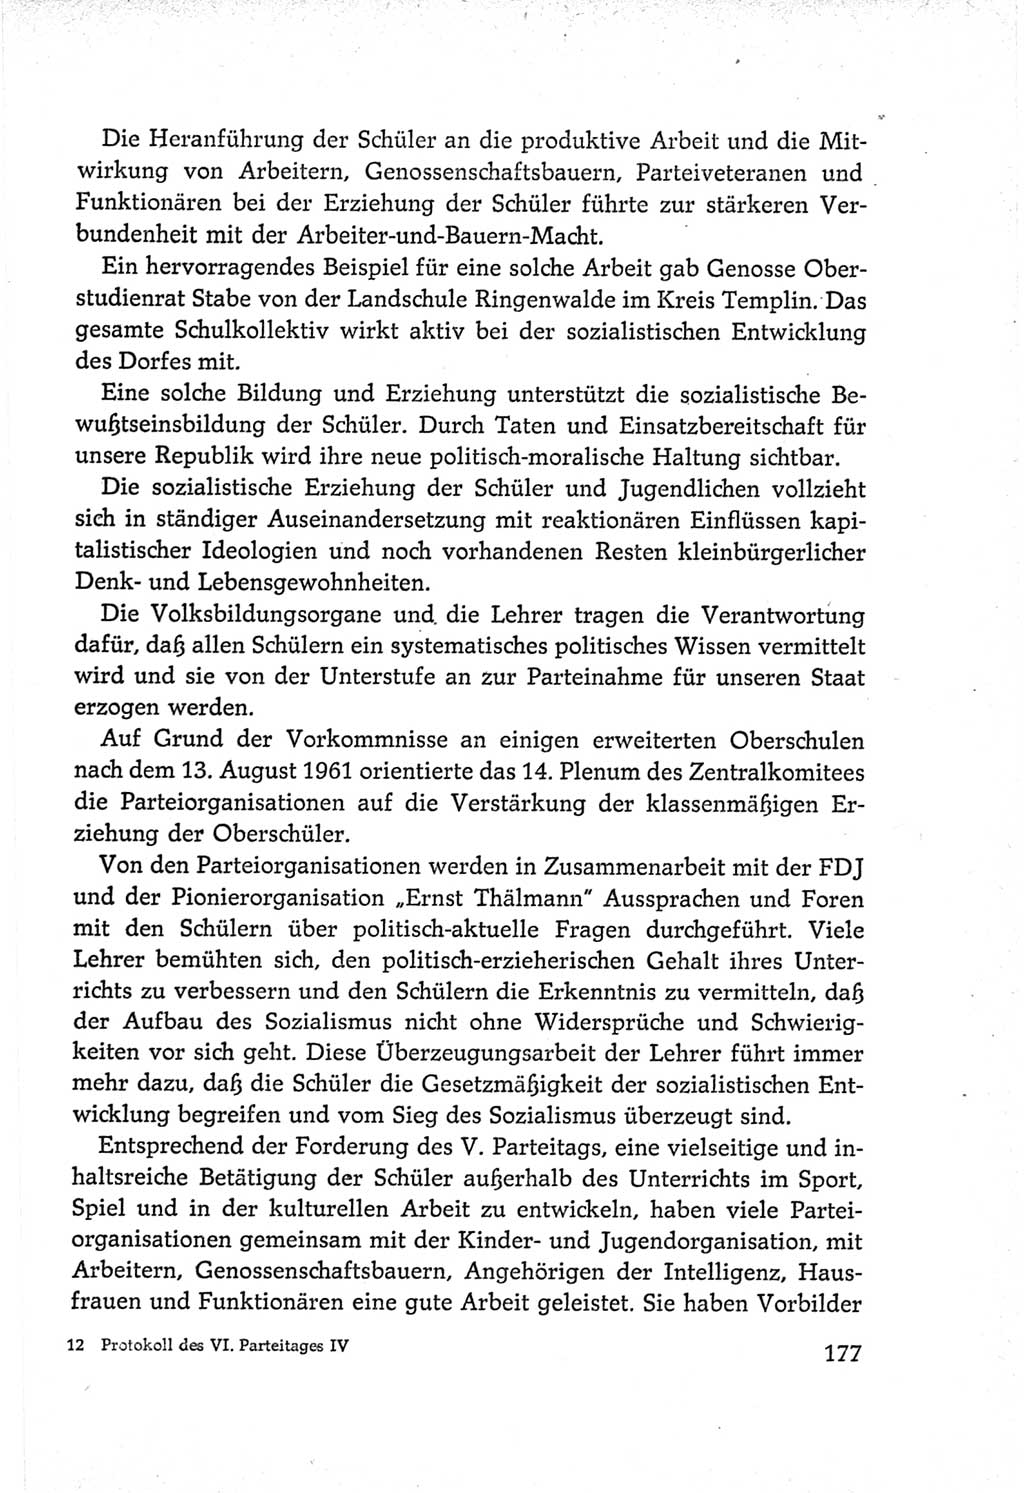 Protokoll der Verhandlungen des Ⅵ. Parteitages der Sozialistischen Einheitspartei Deutschlands (SED) [Deutsche Demokratische Republik (DDR)] 1963, Band Ⅳ, Seite 177 (Prot. Verh. Ⅵ. PT SED DDR 1963, Bd. Ⅳ, S. 177)